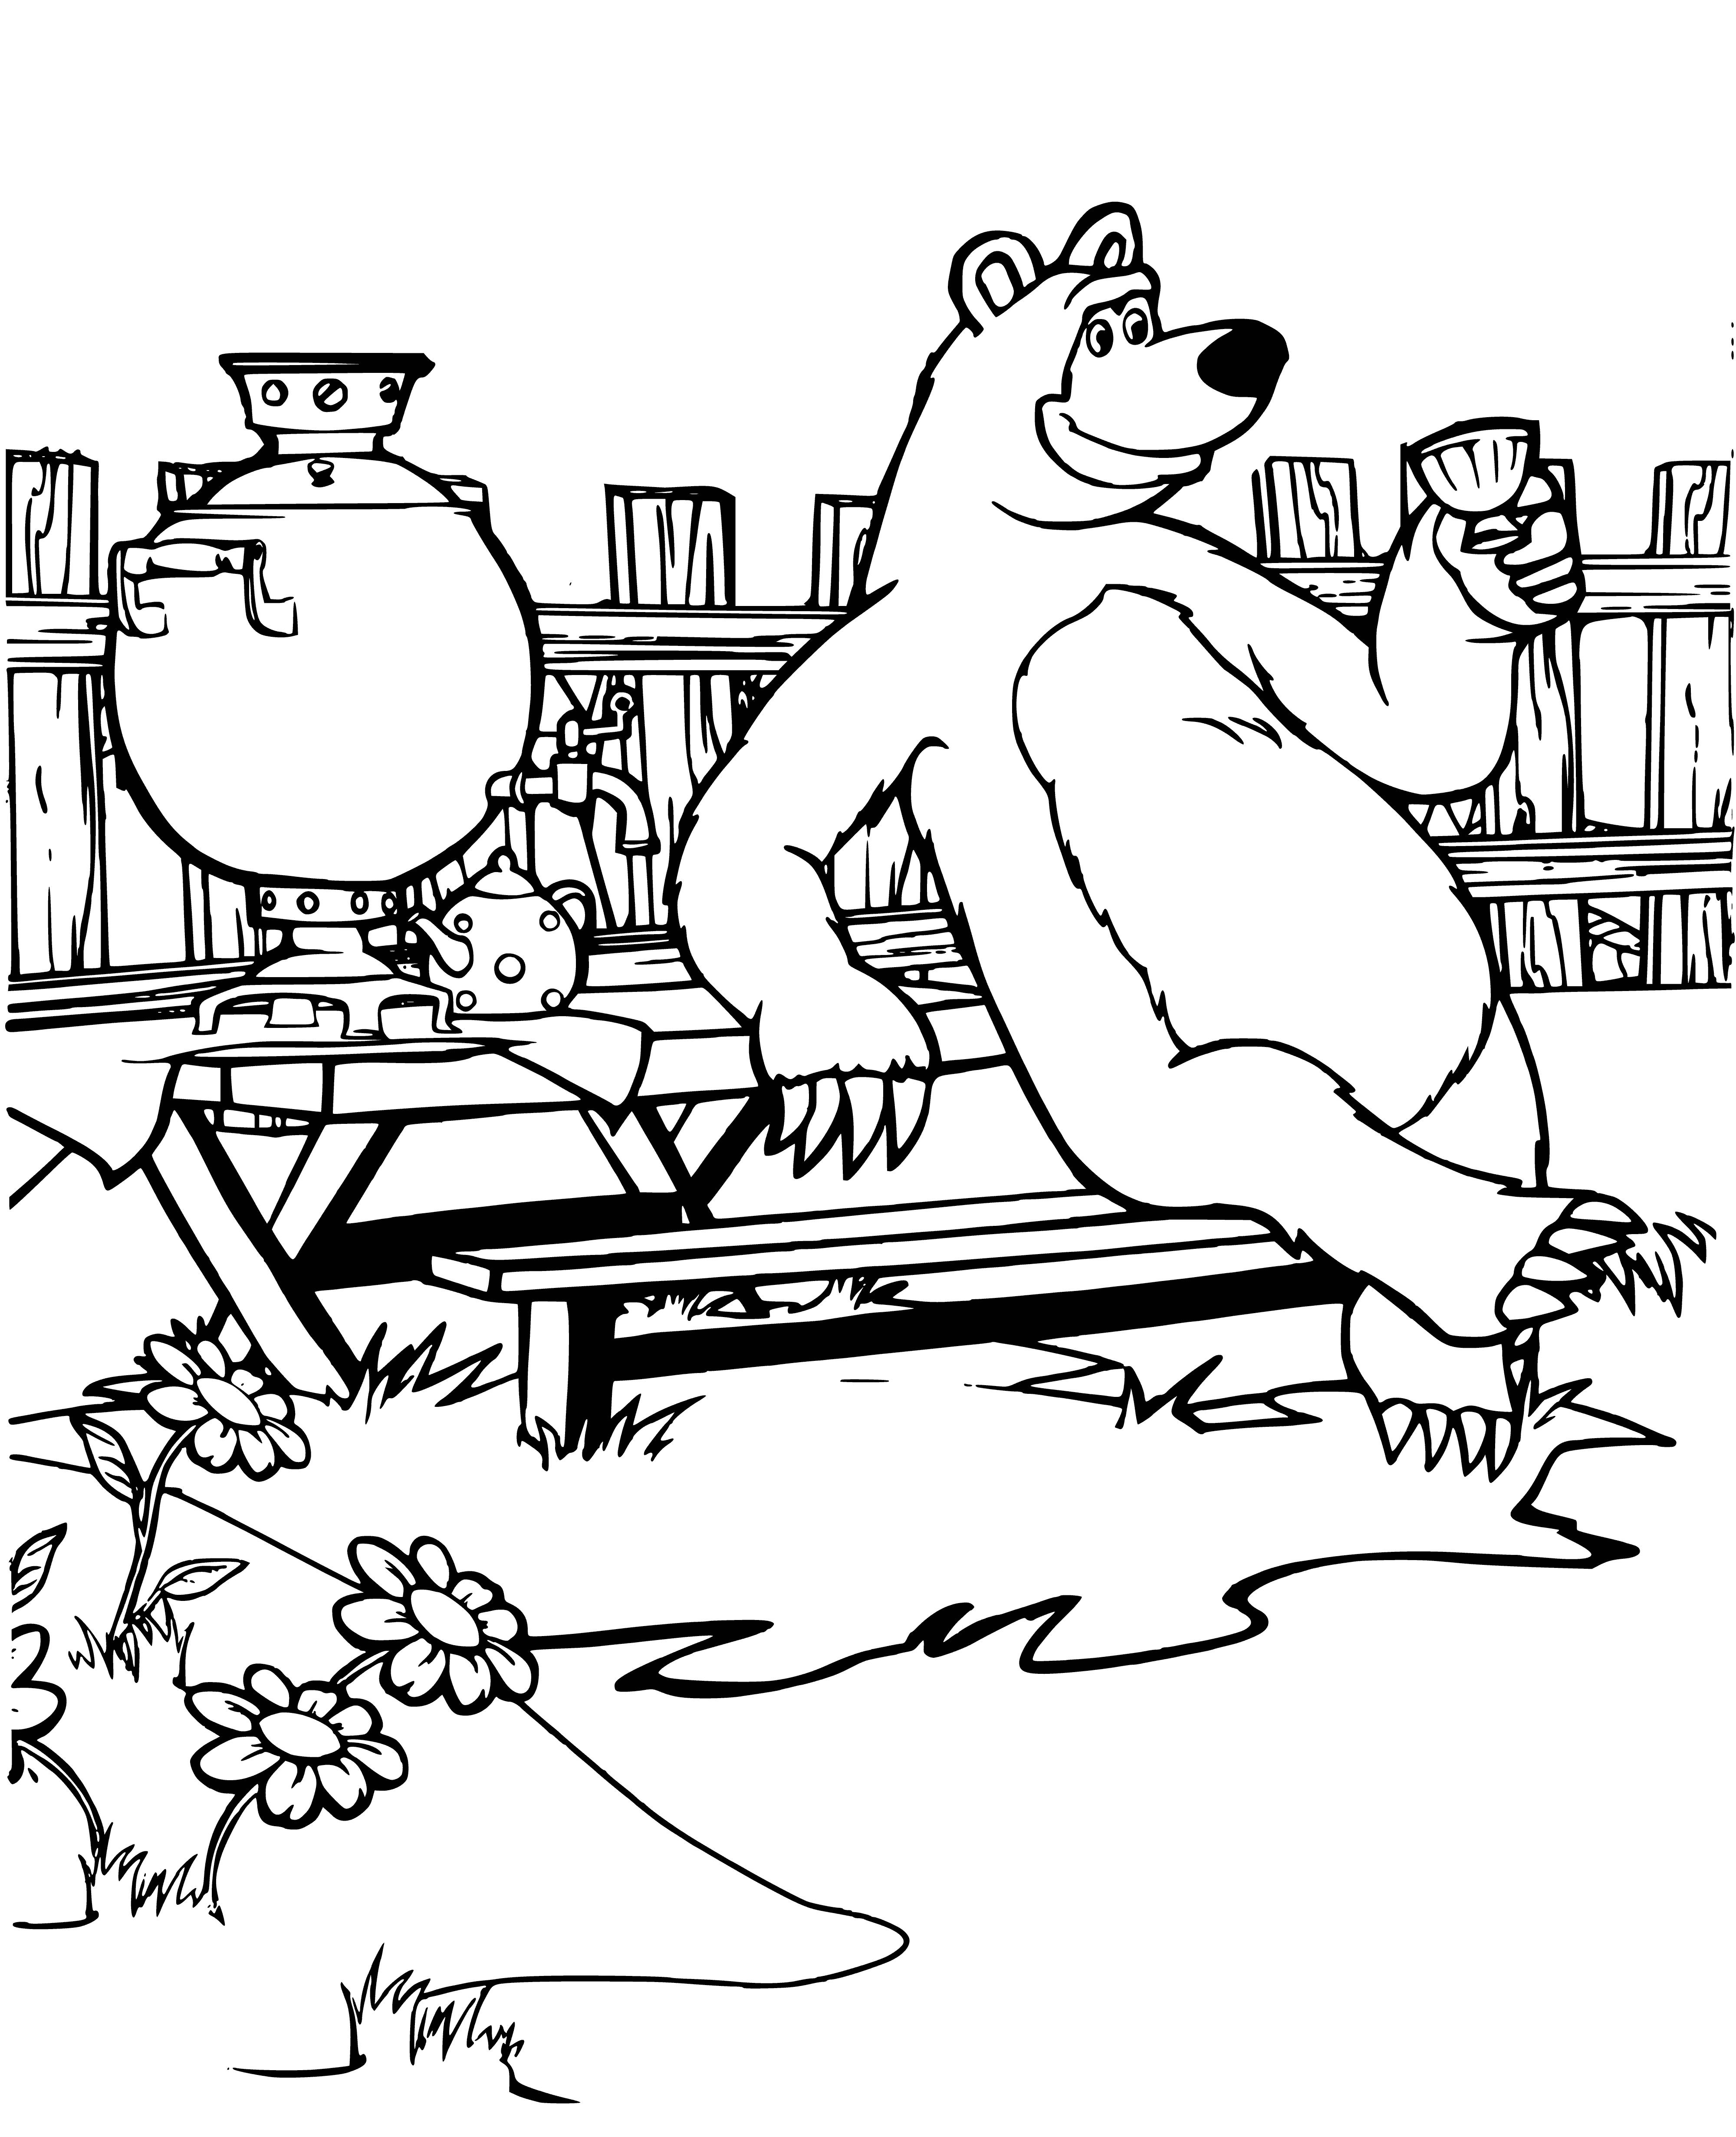 Маша и медведь печать. Раскраска мишка из мультика Маша и медведь. Медведь из мультфильма Маша и медведь раскраска. Маша раскраска Маша и медведь. Раскраска Маща и МЕДВЕТ.